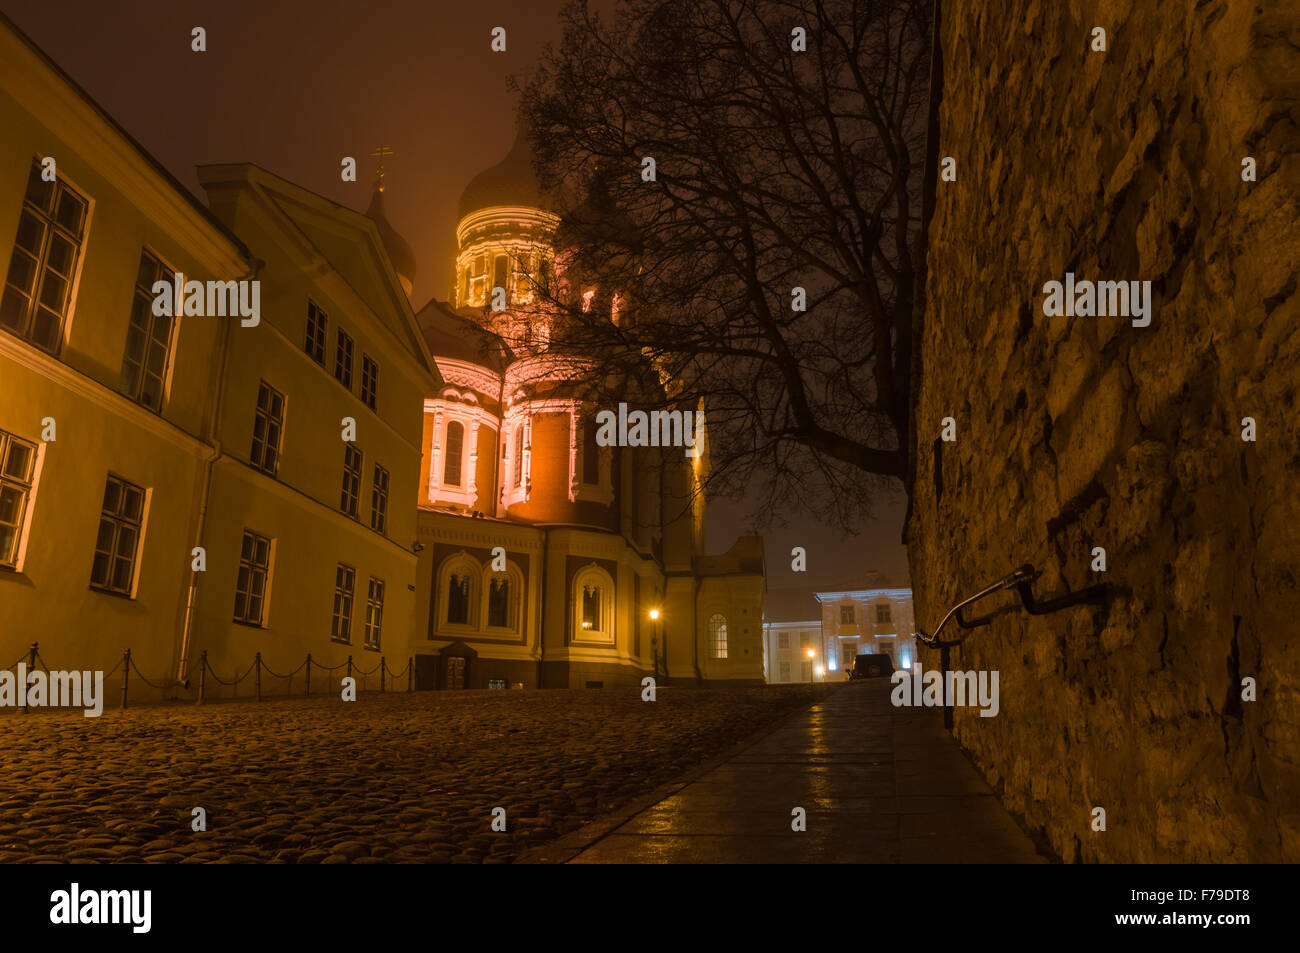 Night view on illuminated Alexander Nevsky Cathedral, Tallinn, Estonia Stock Photo